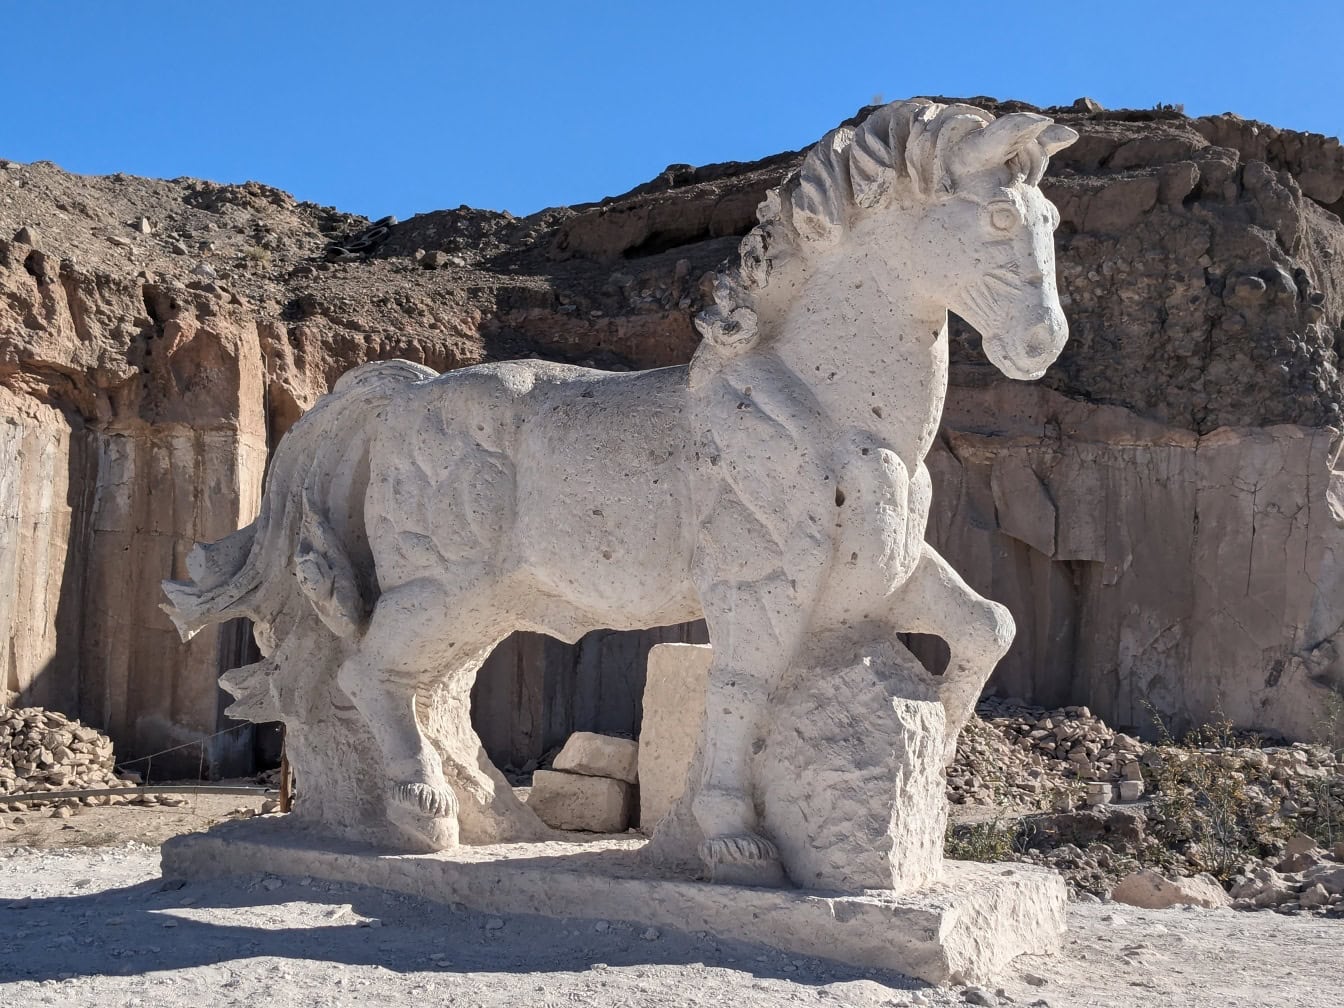 Μεγαλοπρεπές πέτρινο άγαλμα ενός λευκού αλόγου στη διαδρομή Sillar κοντά στο φαράγγι Culebrillas στο Περού